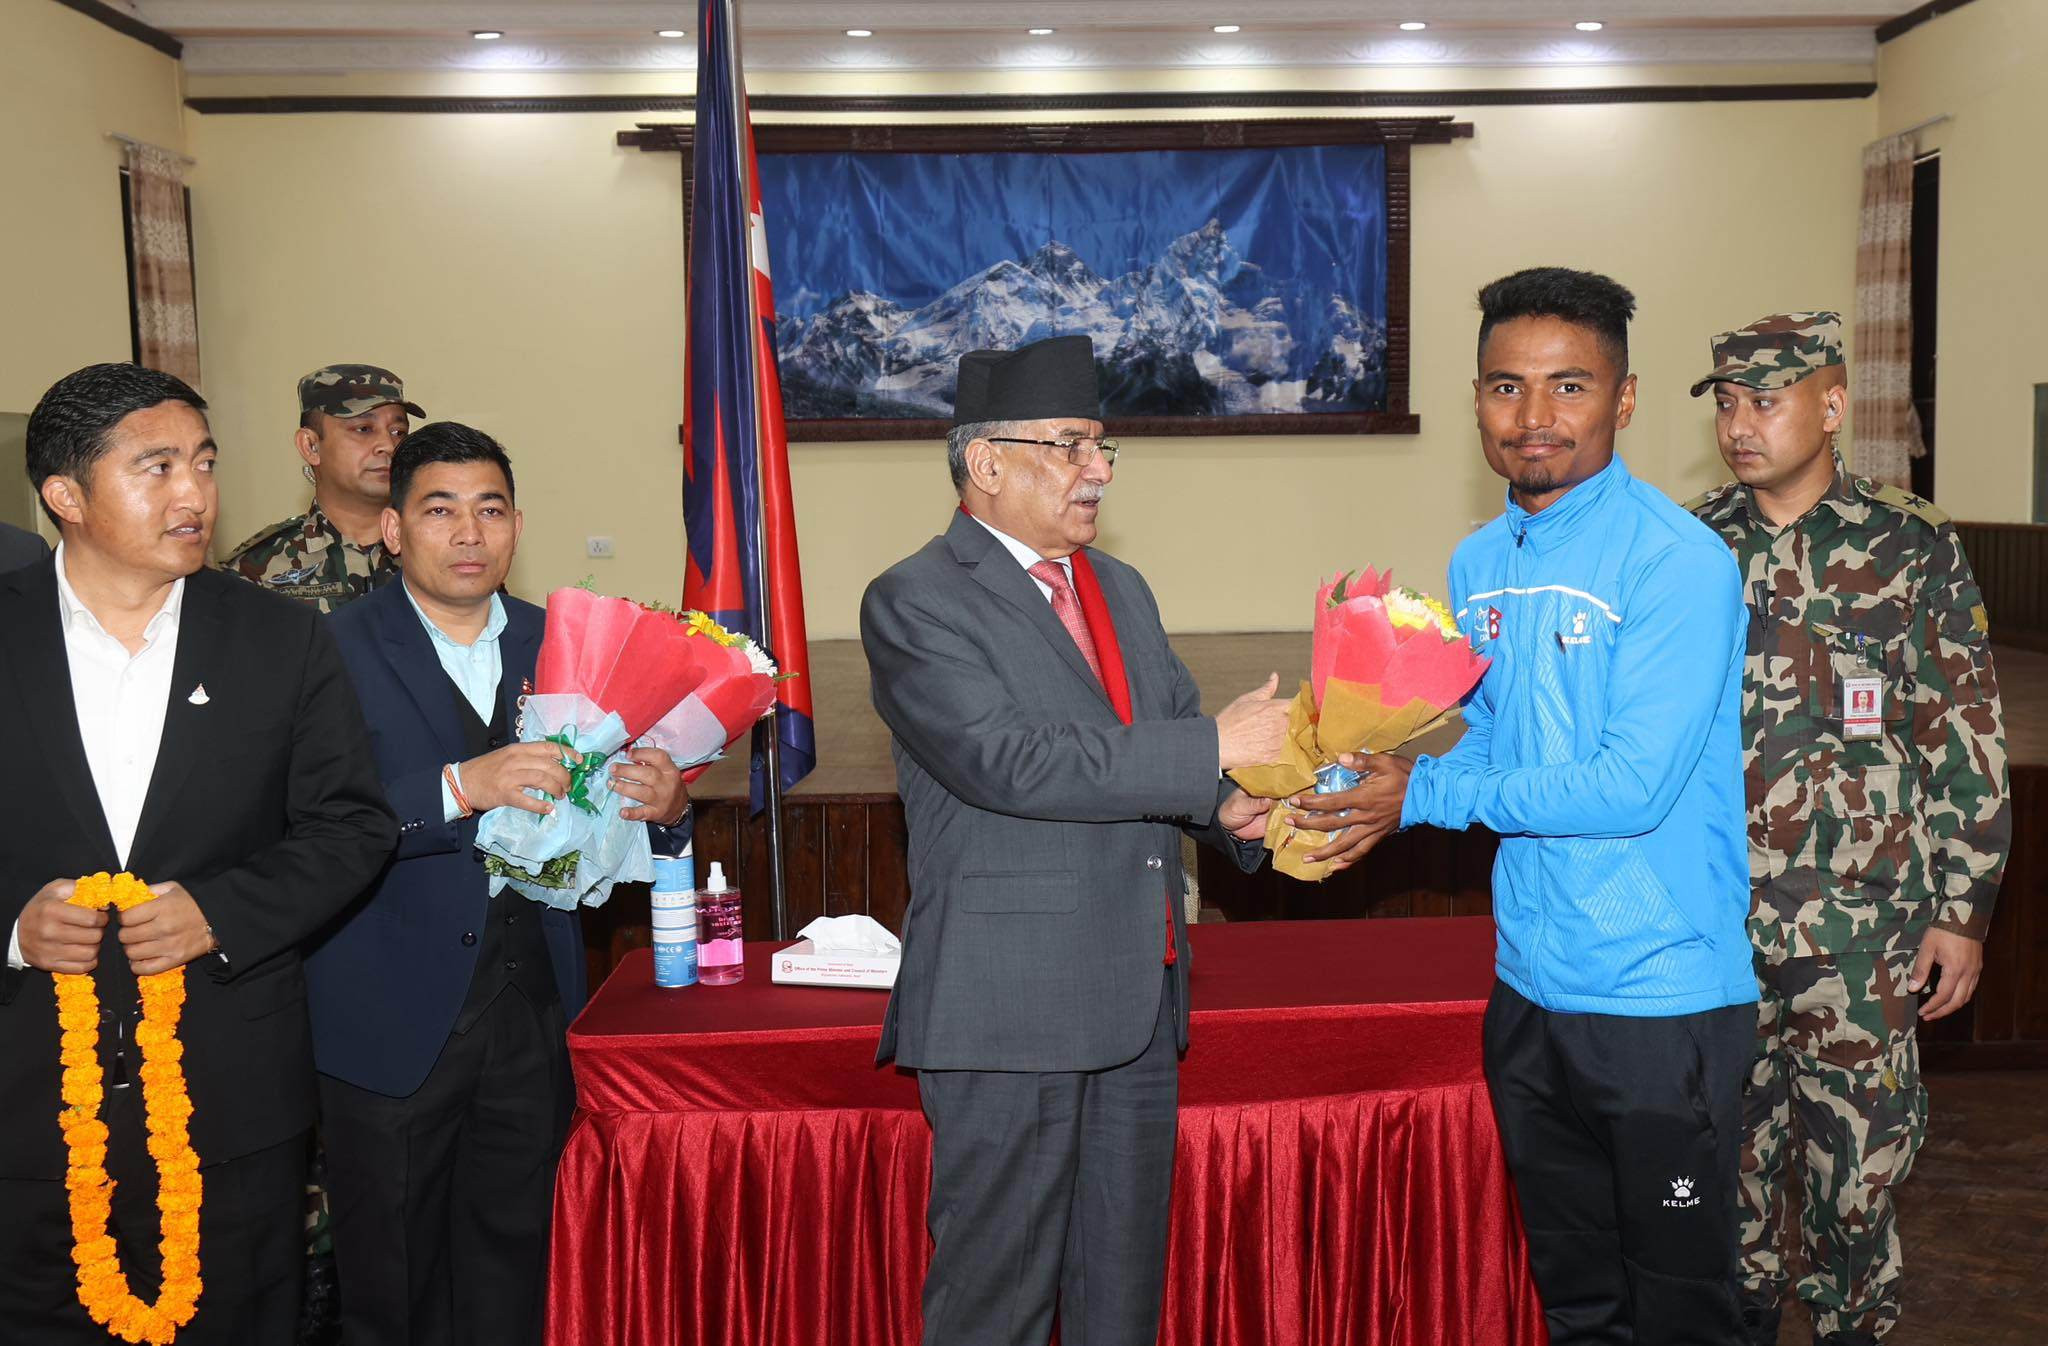 नेपाली क्रिकेट टोलीका खेलाडीलाई प्रधानमन्त्री प्रचण्डले भेटेरै दिए बधाई [तस्बिरहरू]